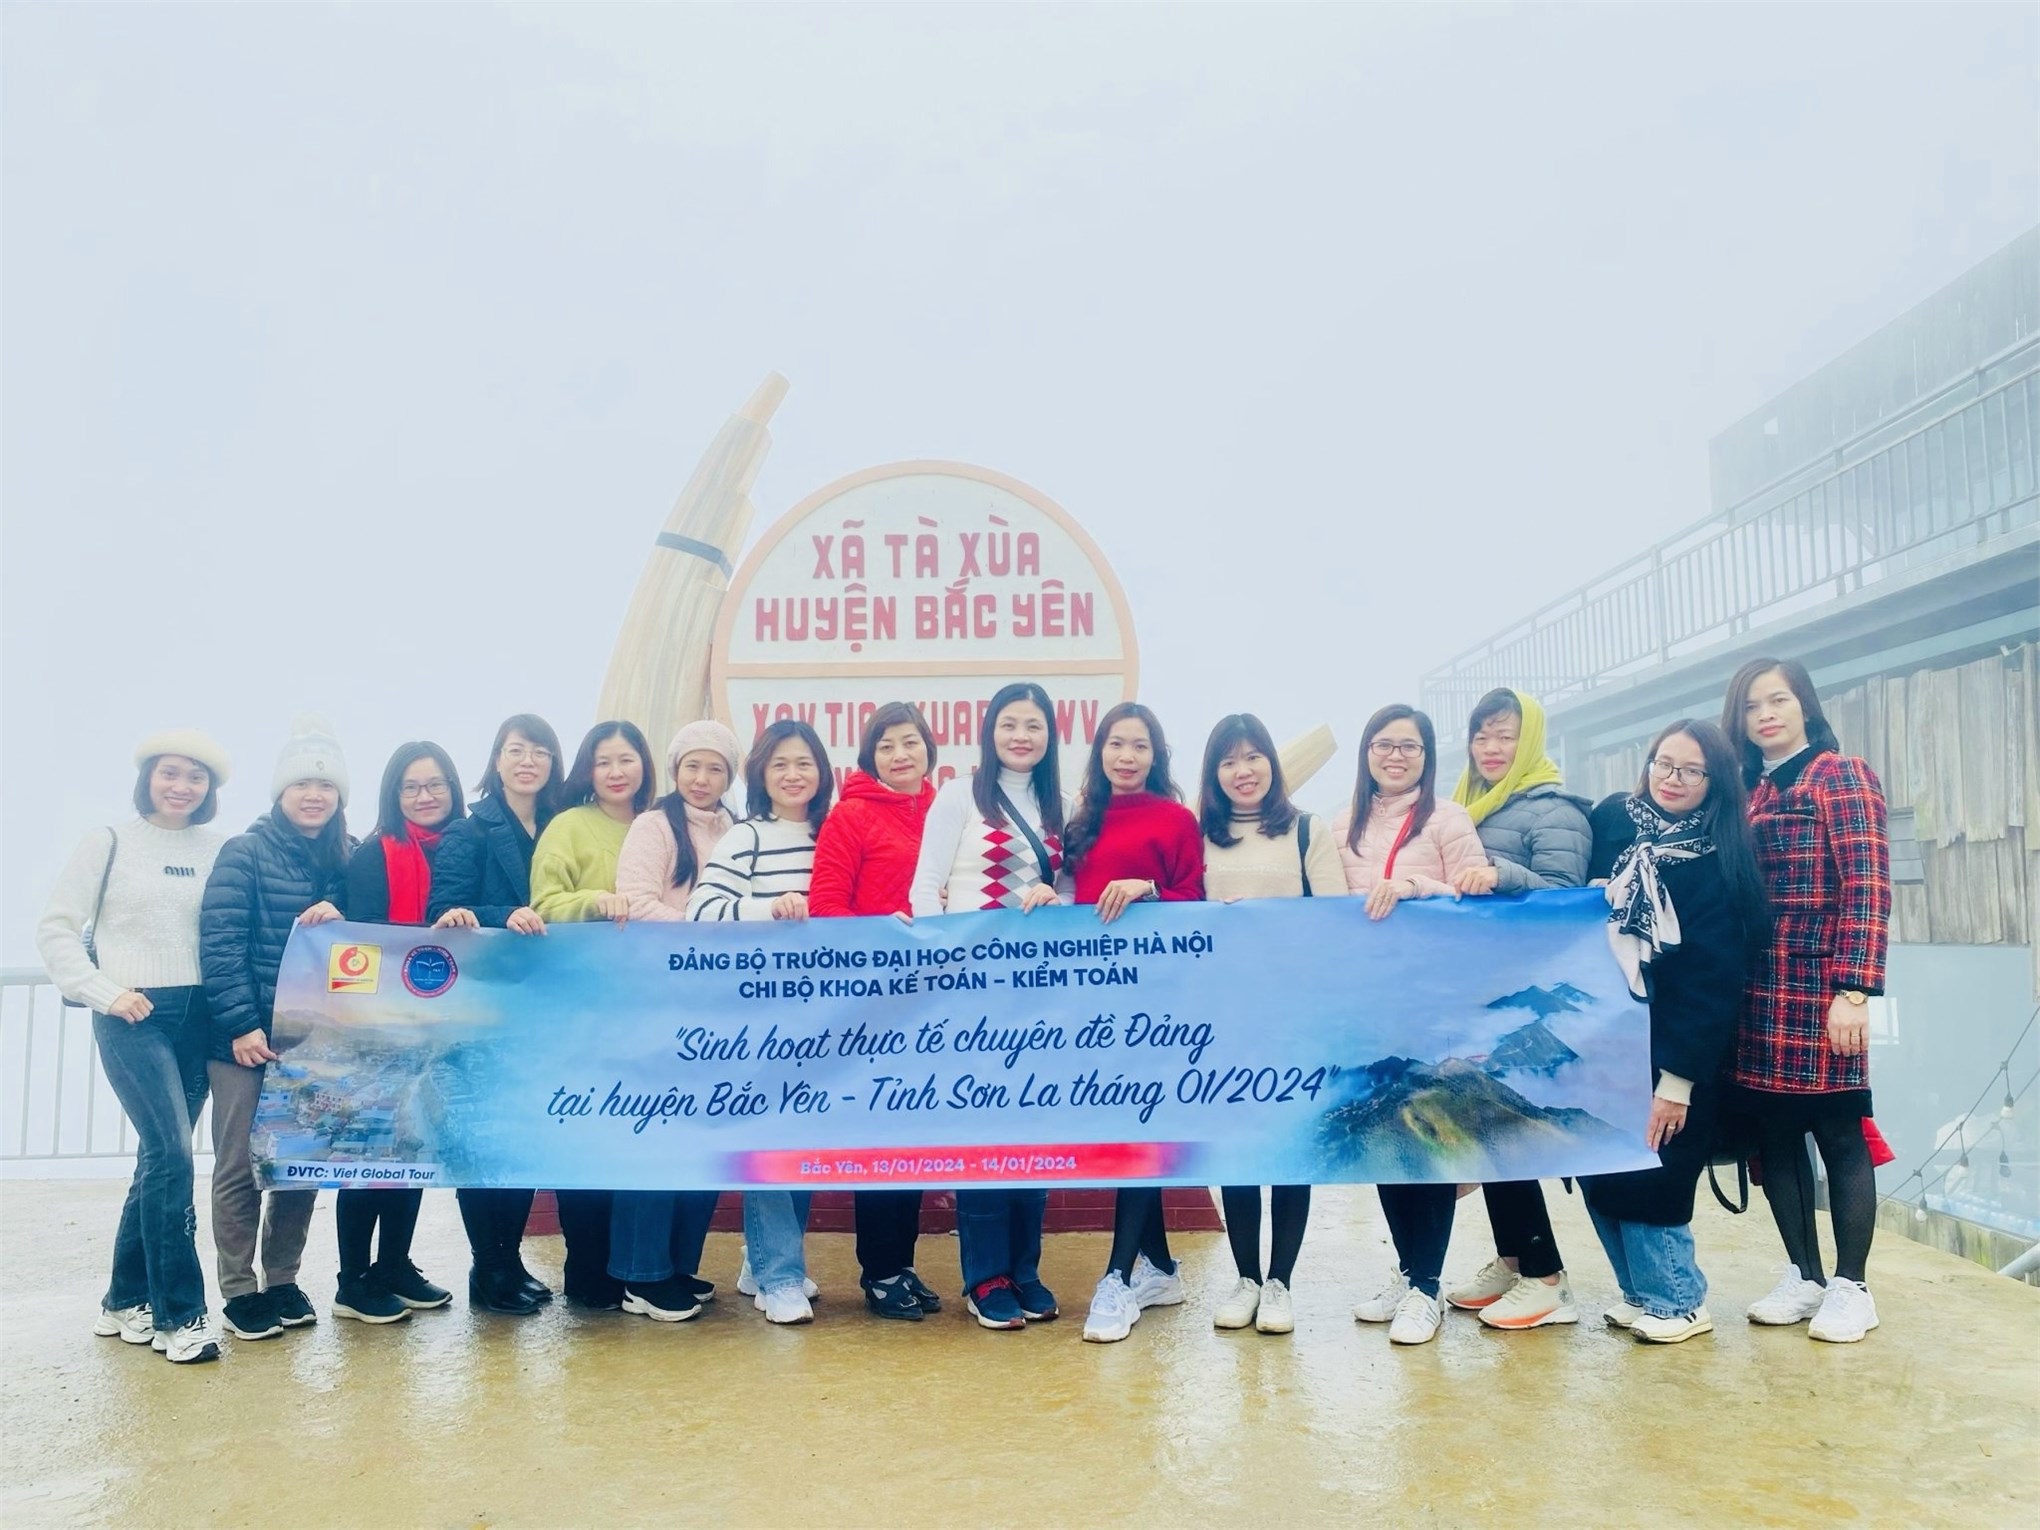 Chuyến đi thực tế sinh hoạt chuyên đề của chi bộ khoa Kế toán - Kiểm toán tại Tà Xùa - huyện Bắc Yên Tỉnh Sơn La ngày 13 và 14/01/2024